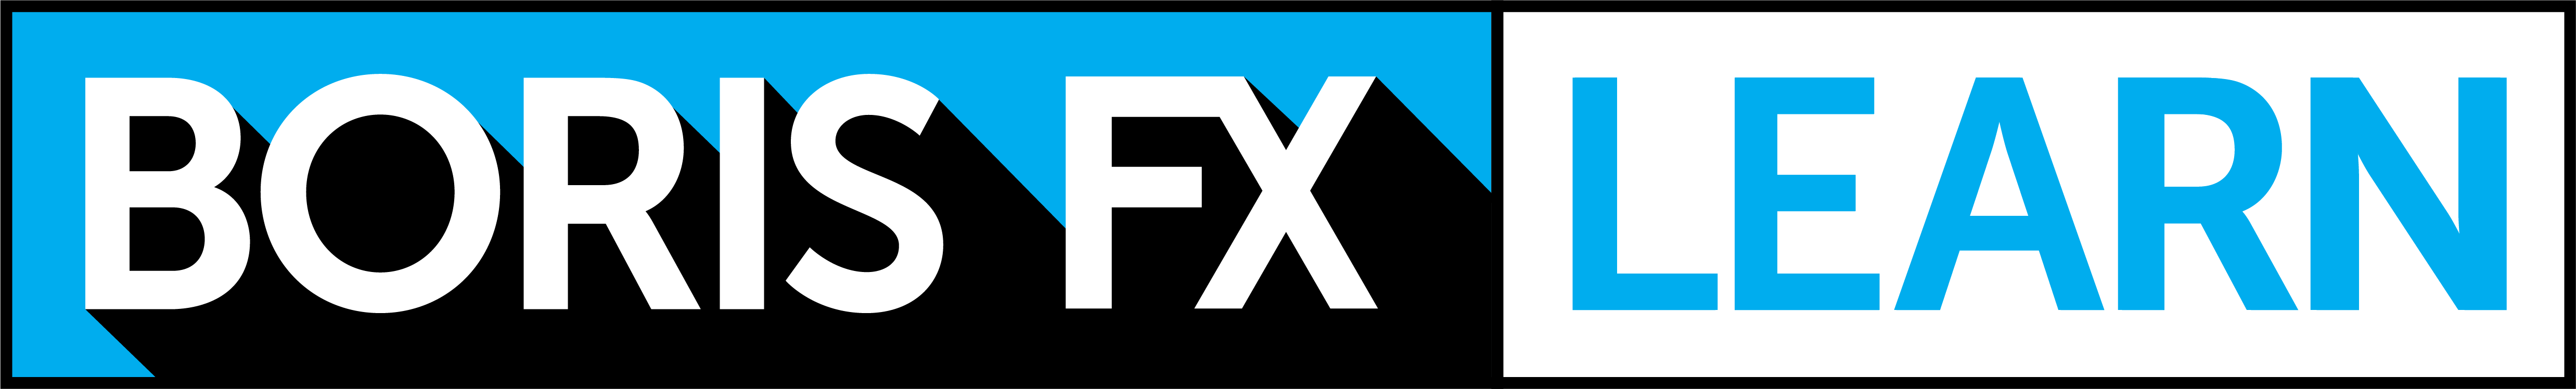 Boris FX Learn logo